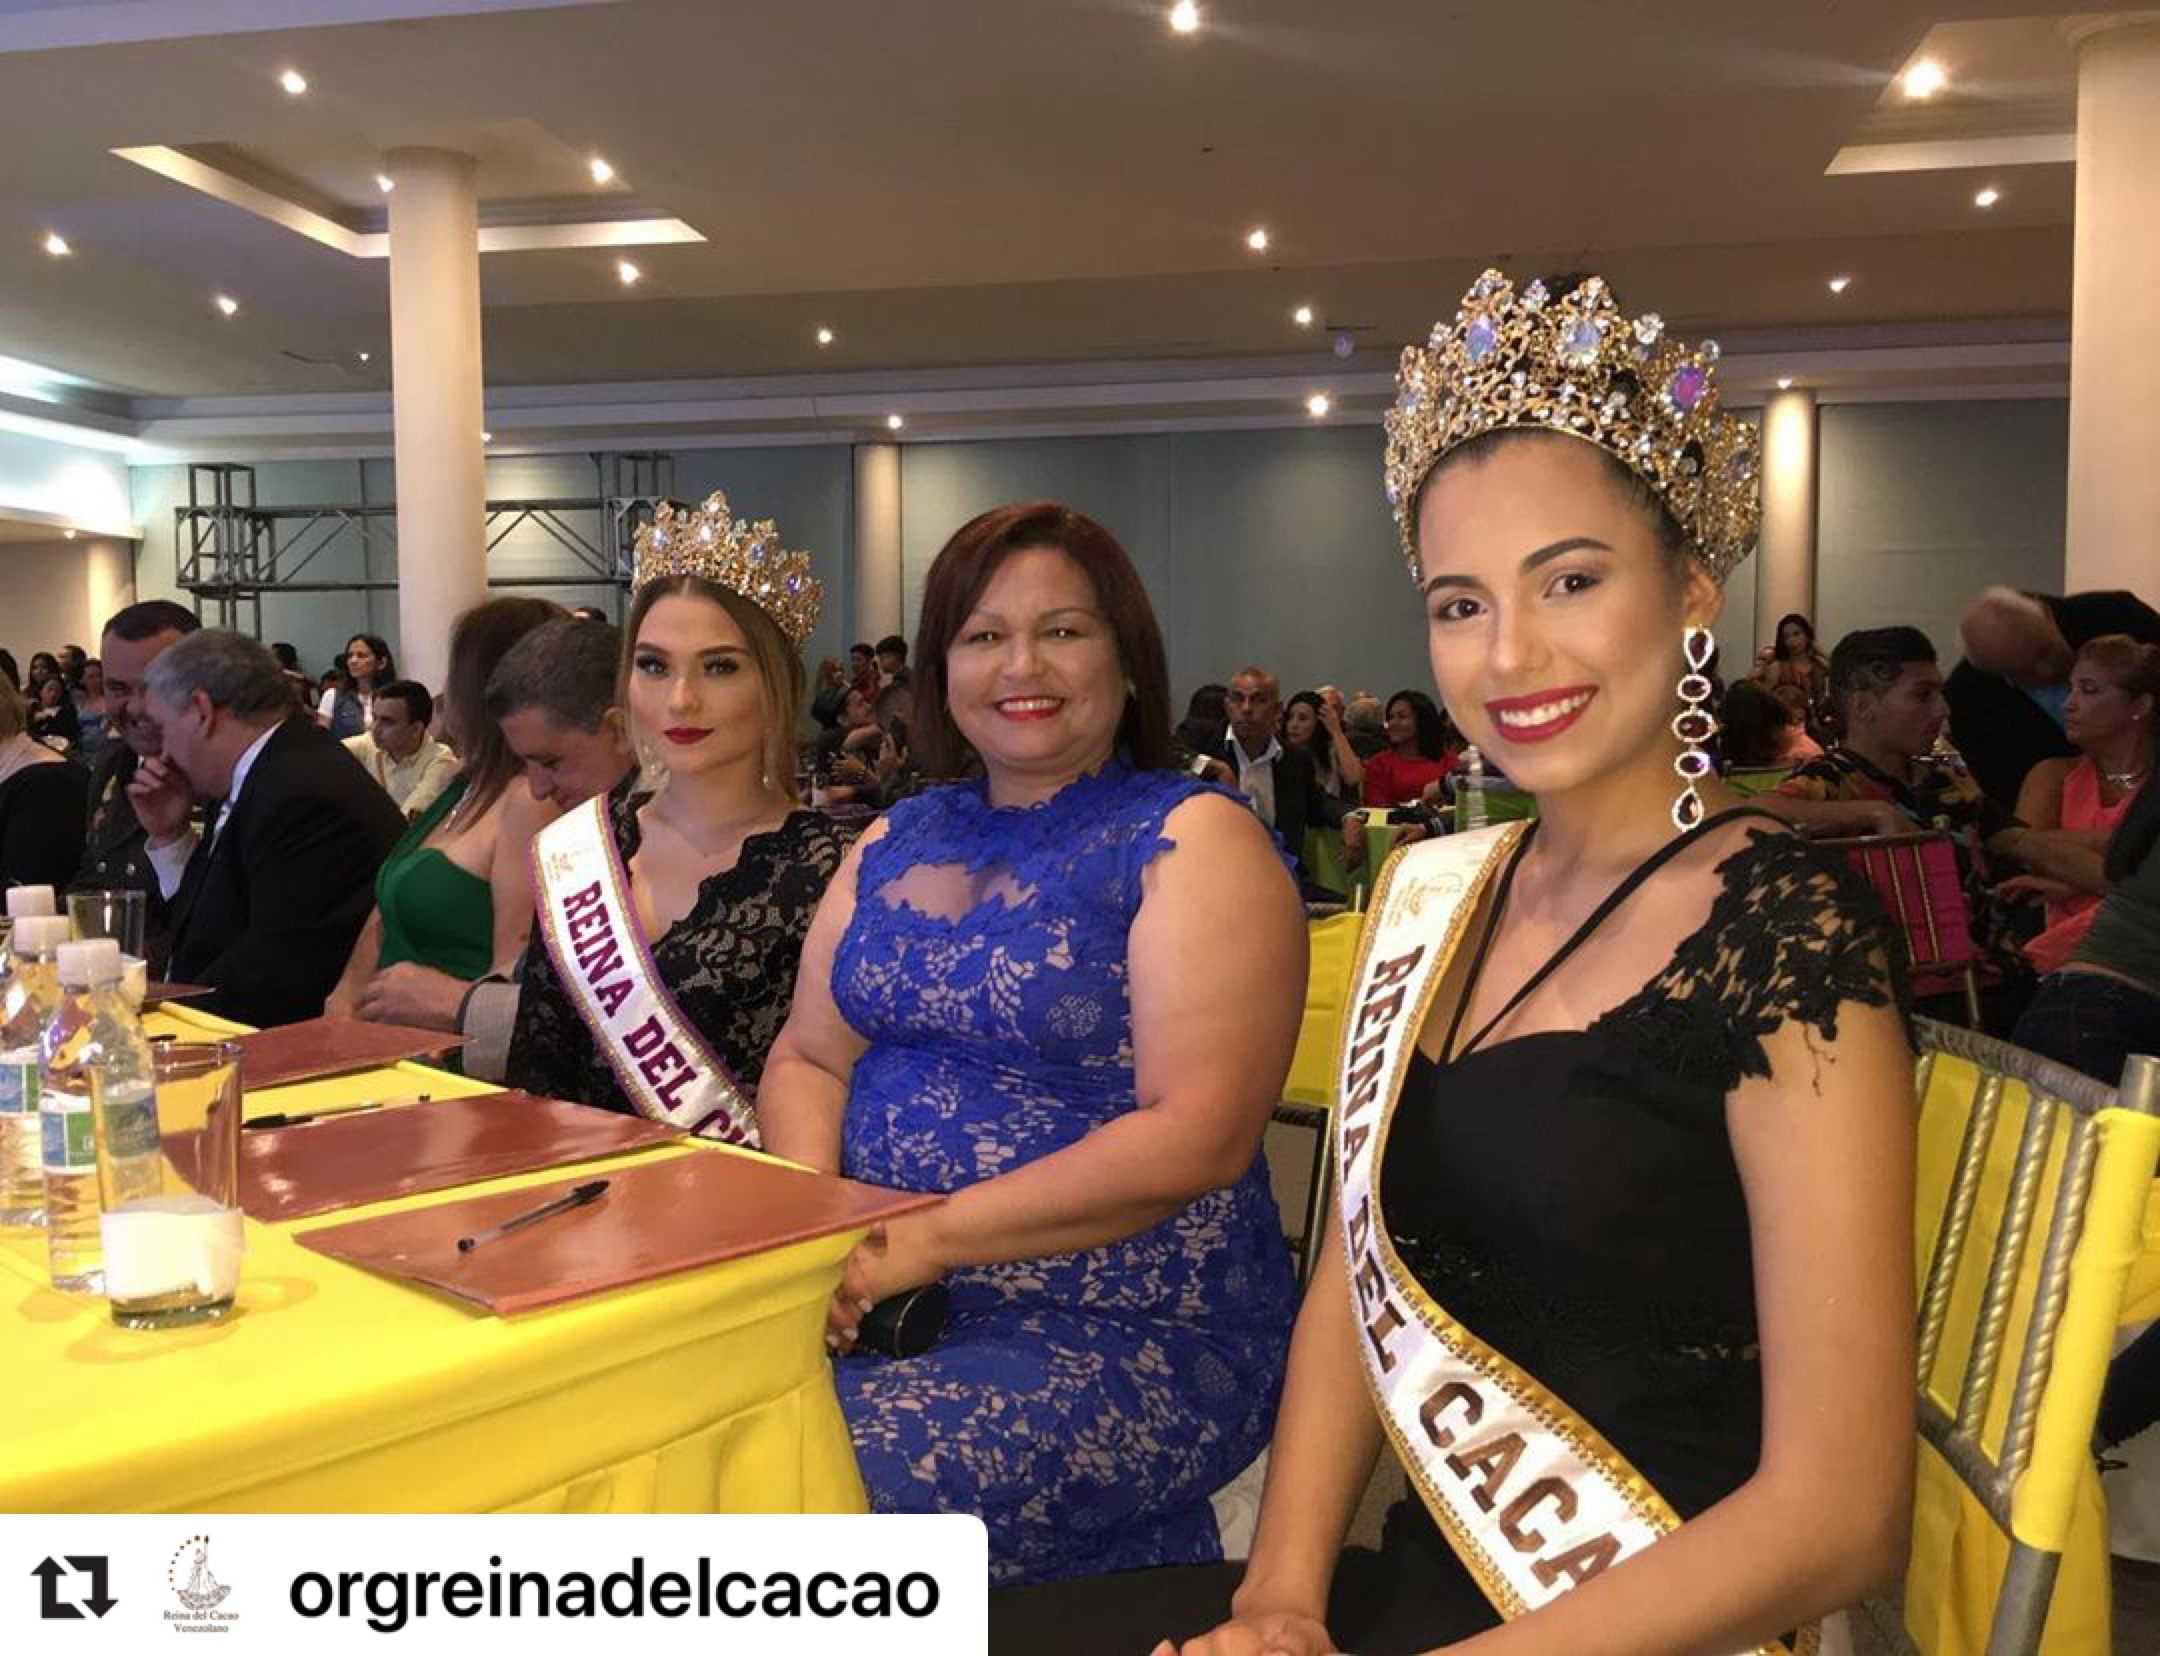 Leudys González y reinas del cacao y chocolate fueron jurados de la reina de carnaval en Maturín